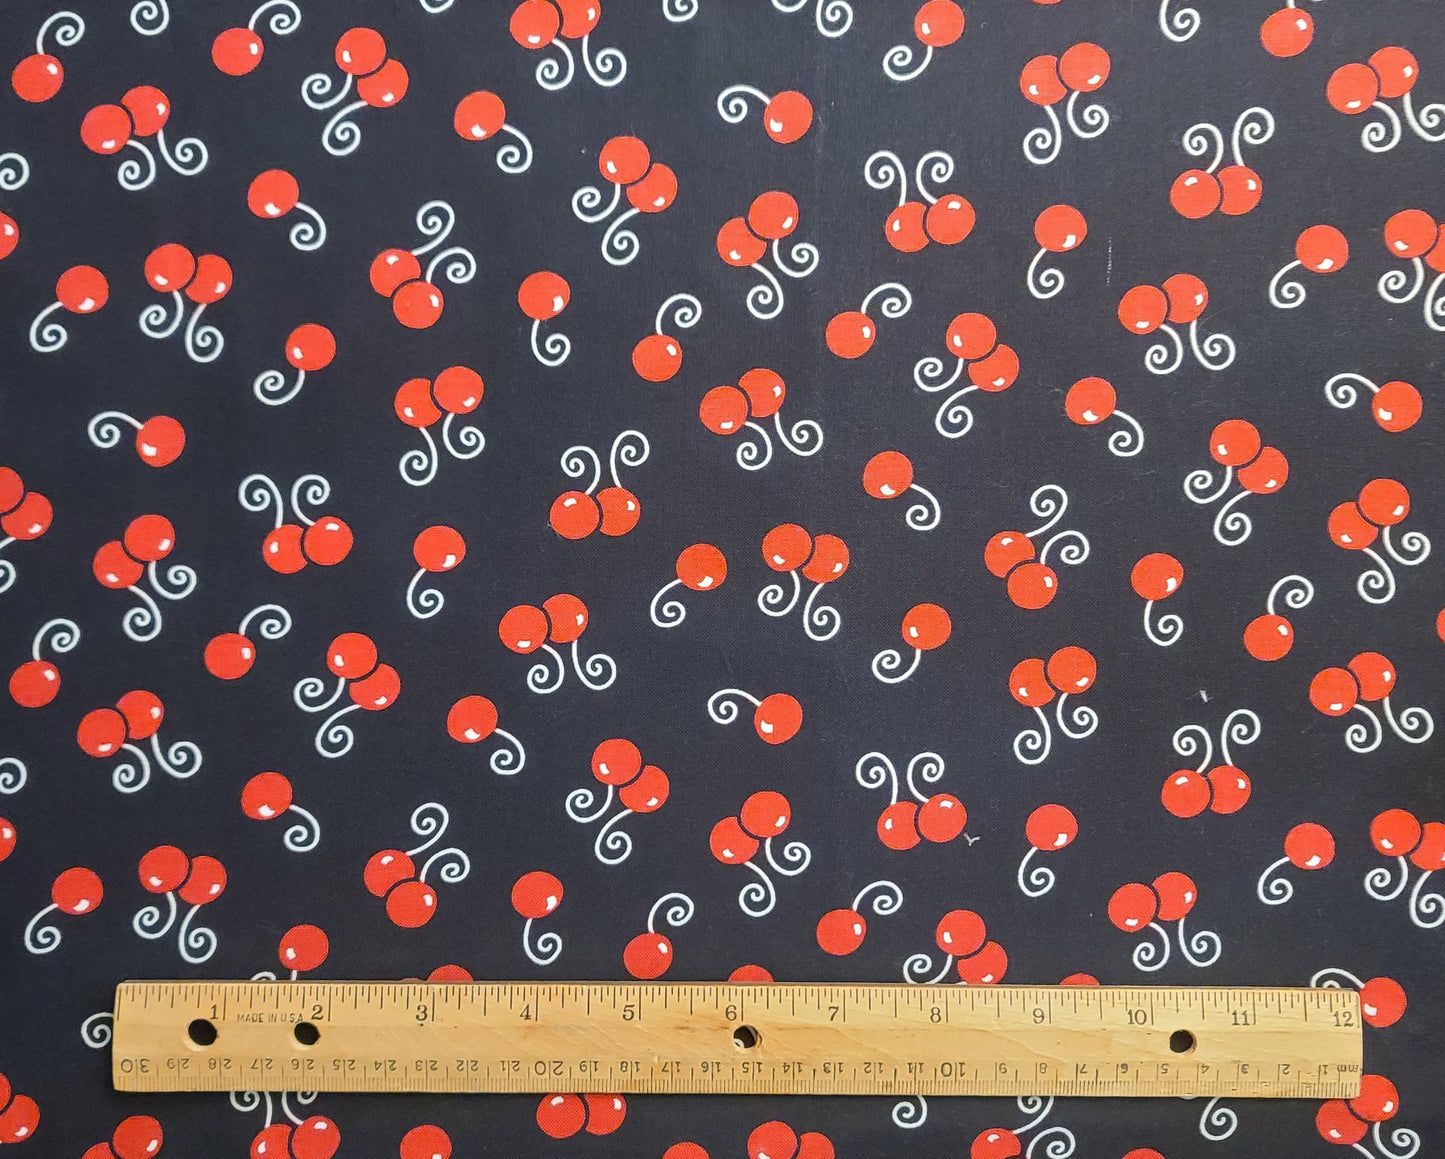 Patt #6459 Blank Quilting - Black Fabric / Red Cherry / White Swirled Stem Print